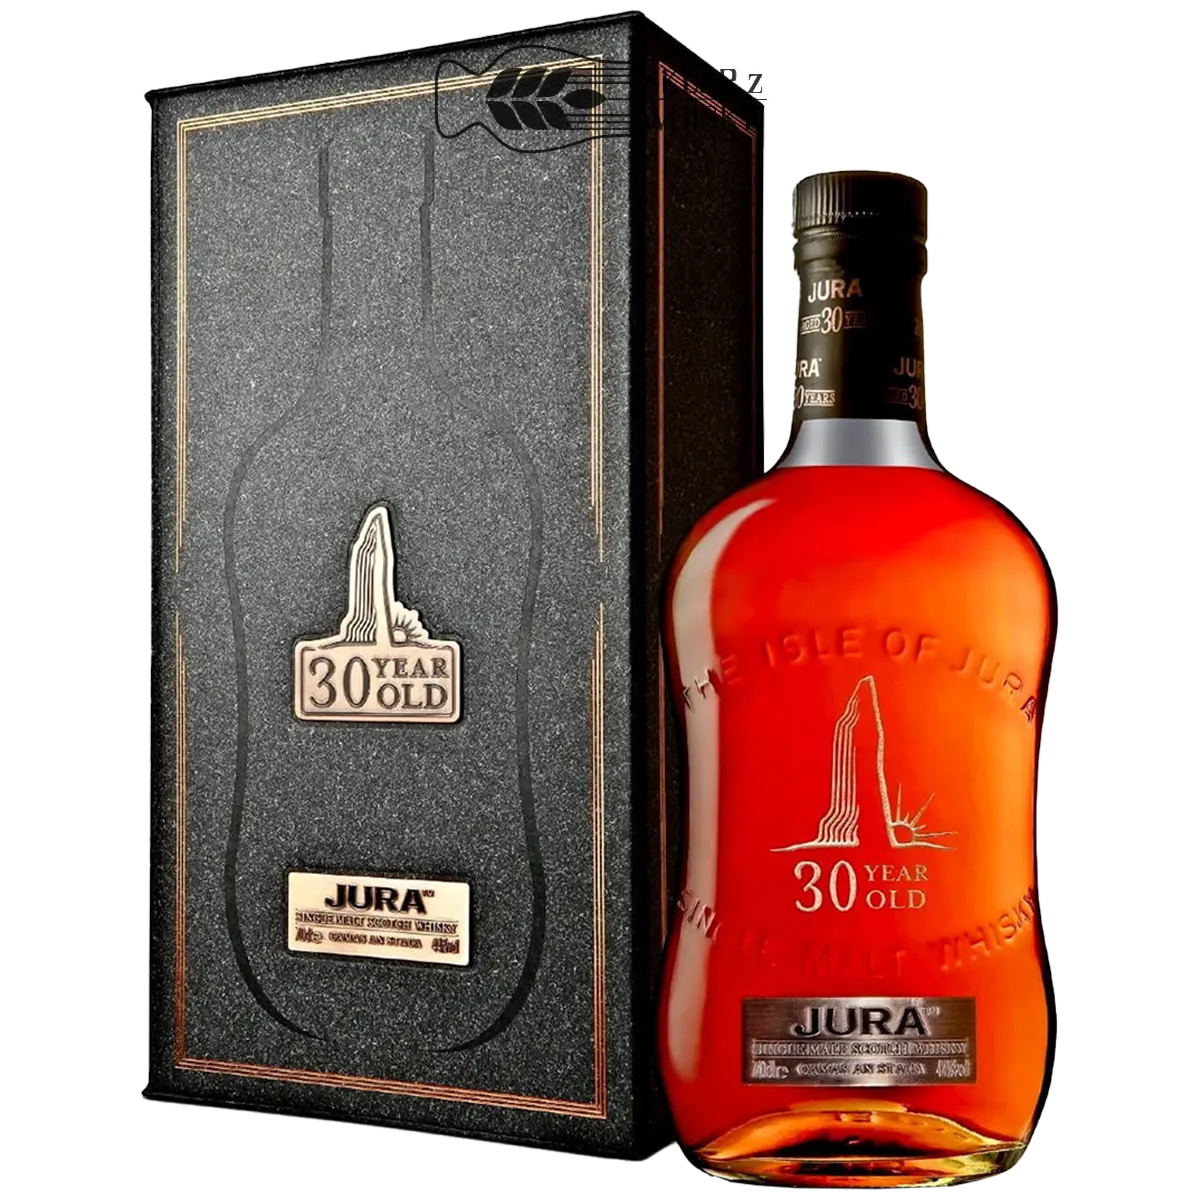 Jura 30 YO Camas An Staca - szkocka whisky single malt z wyspy Jura, 700 ml, w pudełku